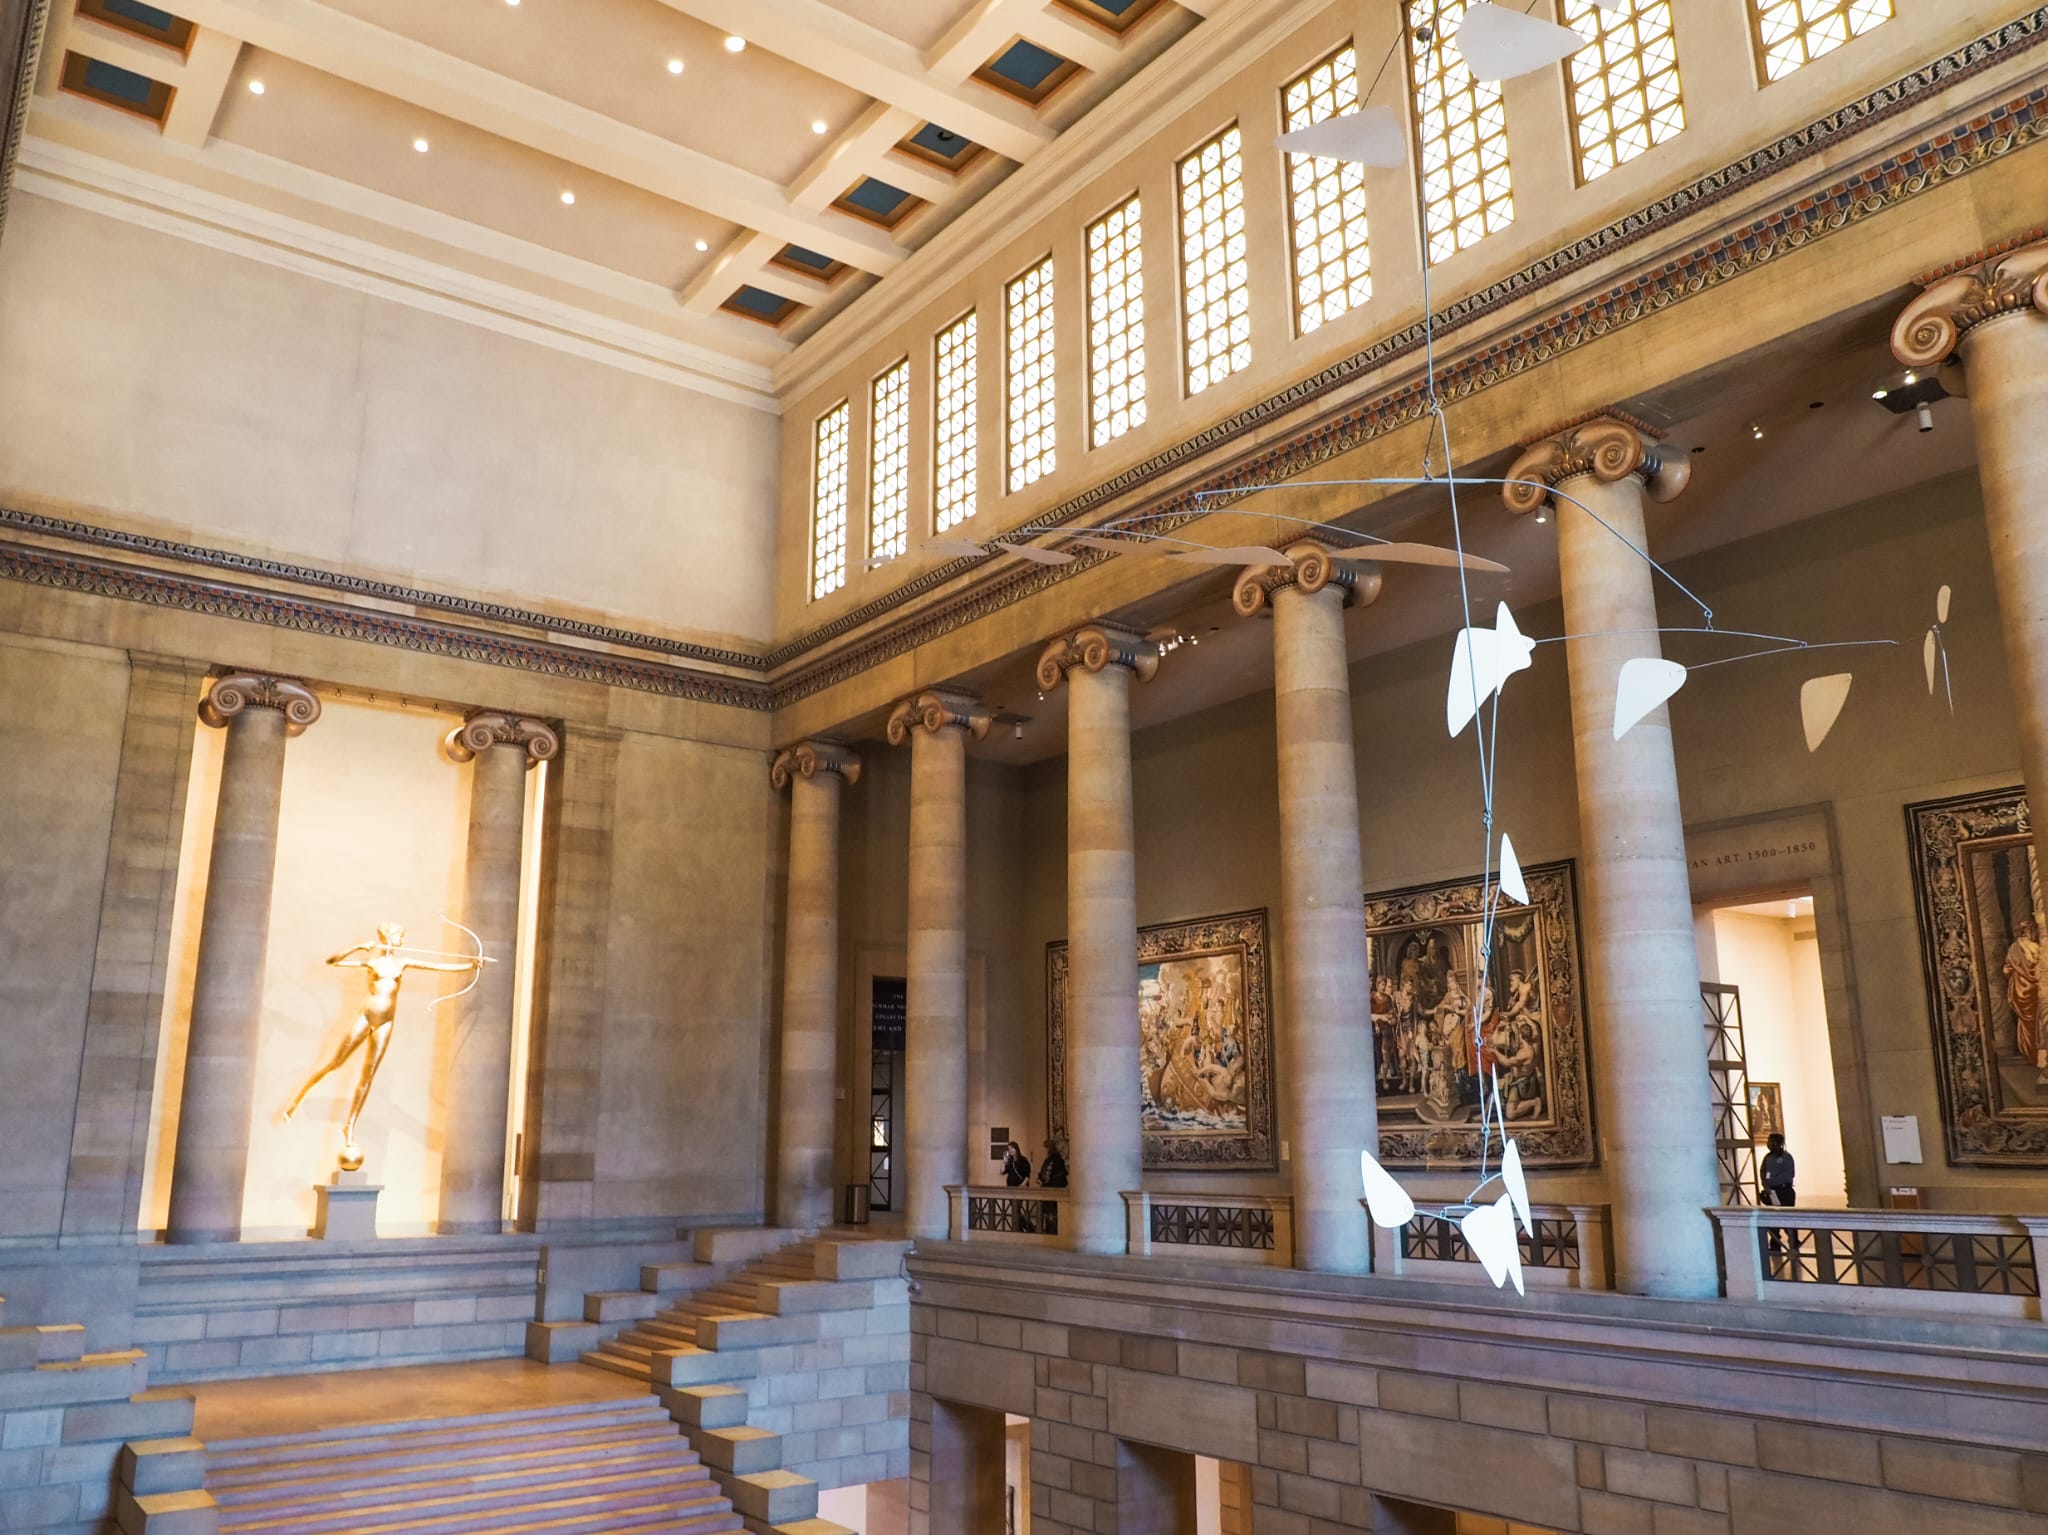 Als er een museum is dat je moet bezoeken tijdens je citytrip, dan is het wel het Philadelphia Museum of Art